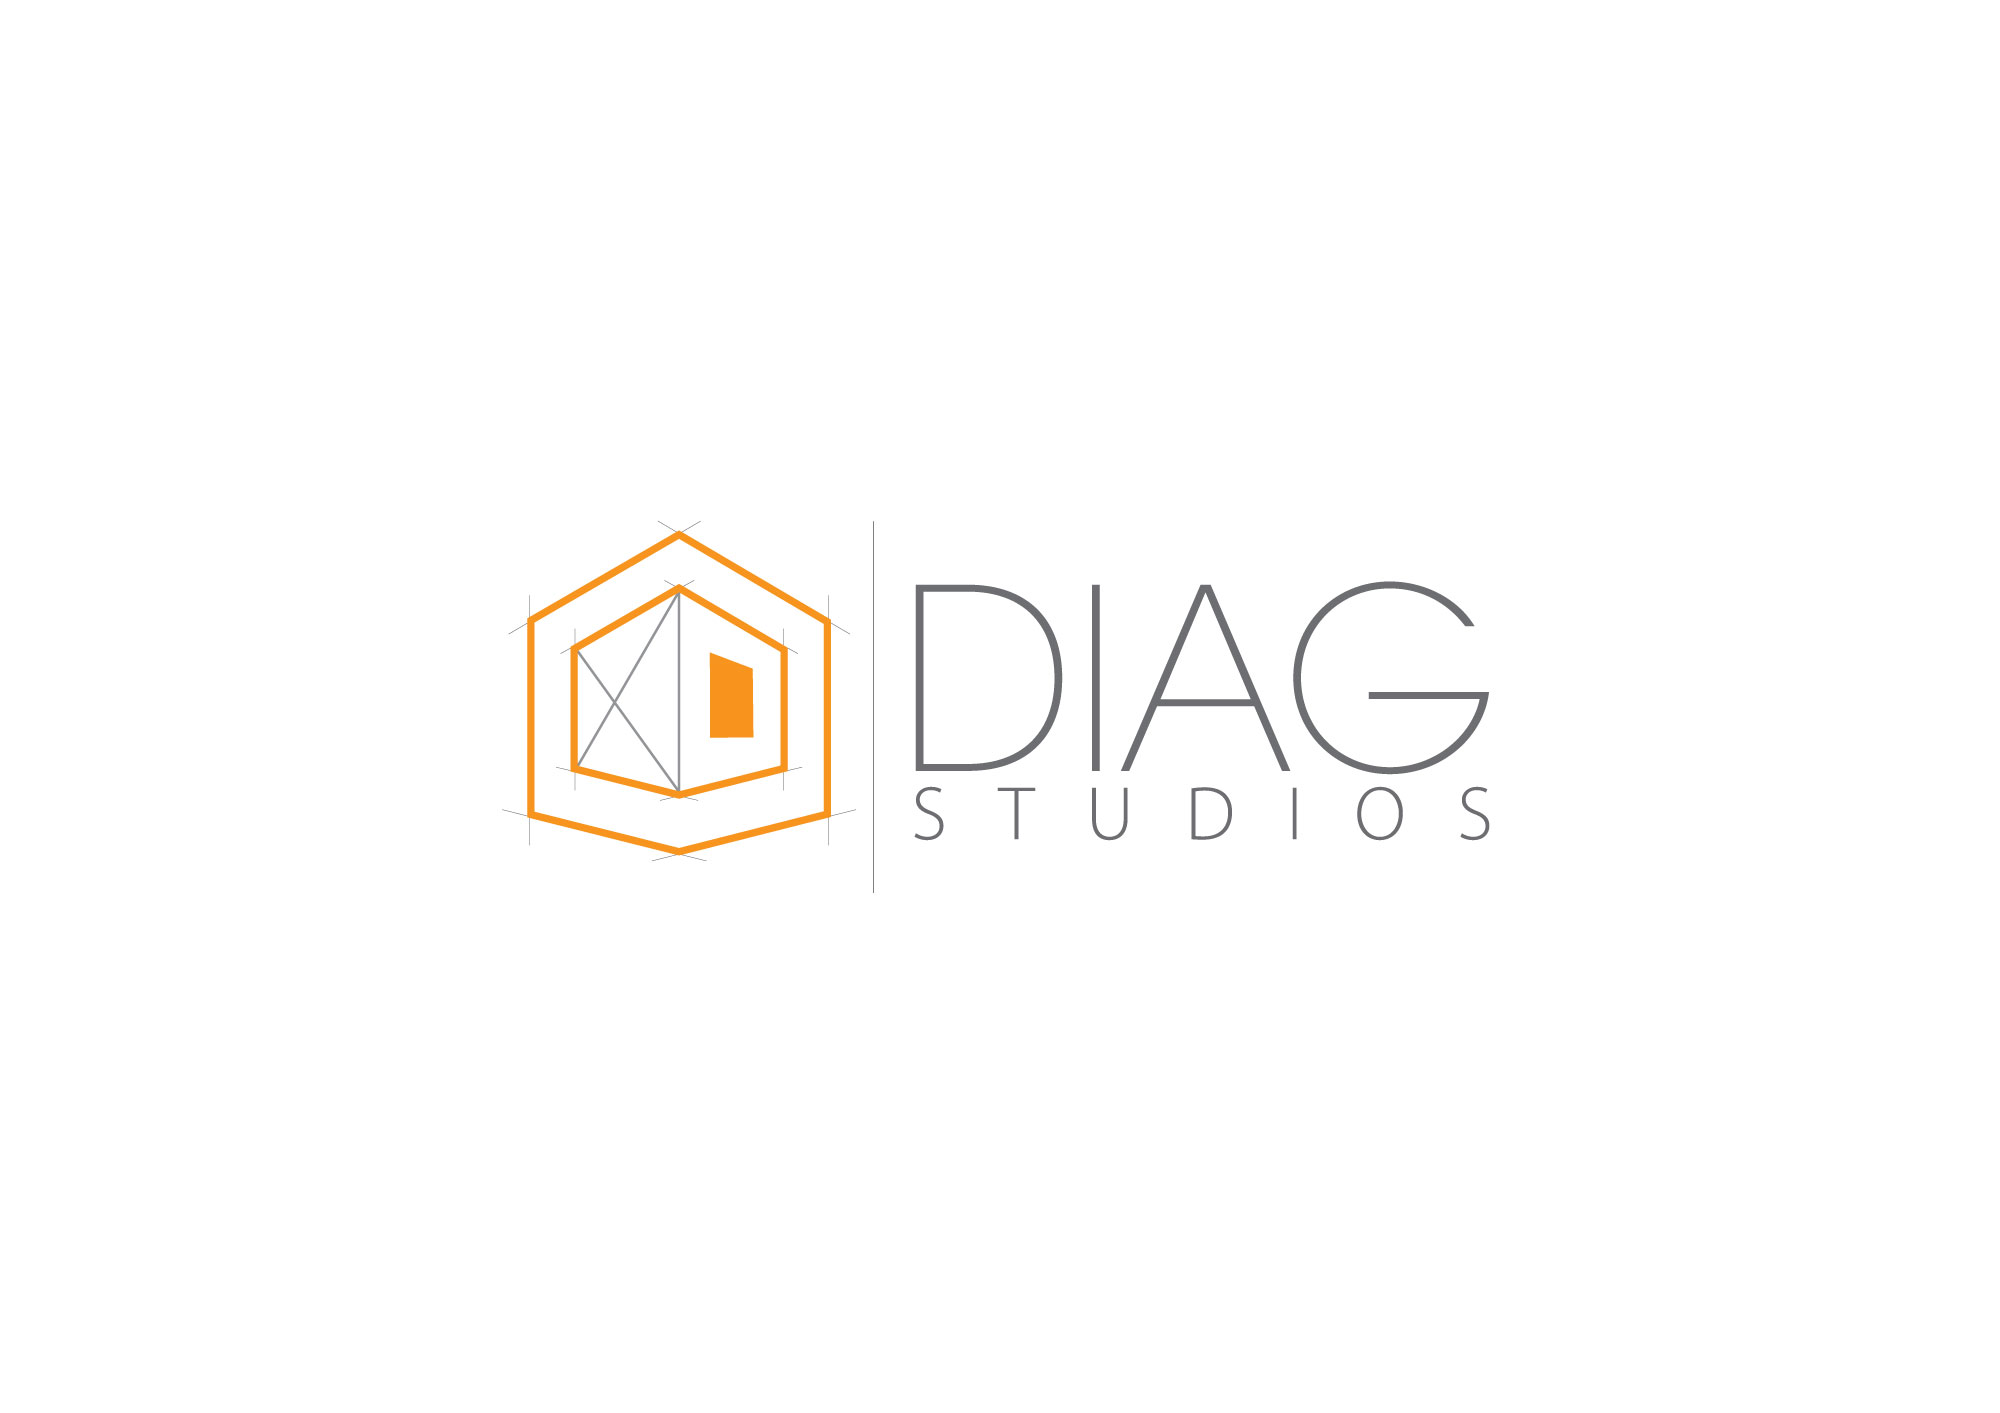 DIAG Studios